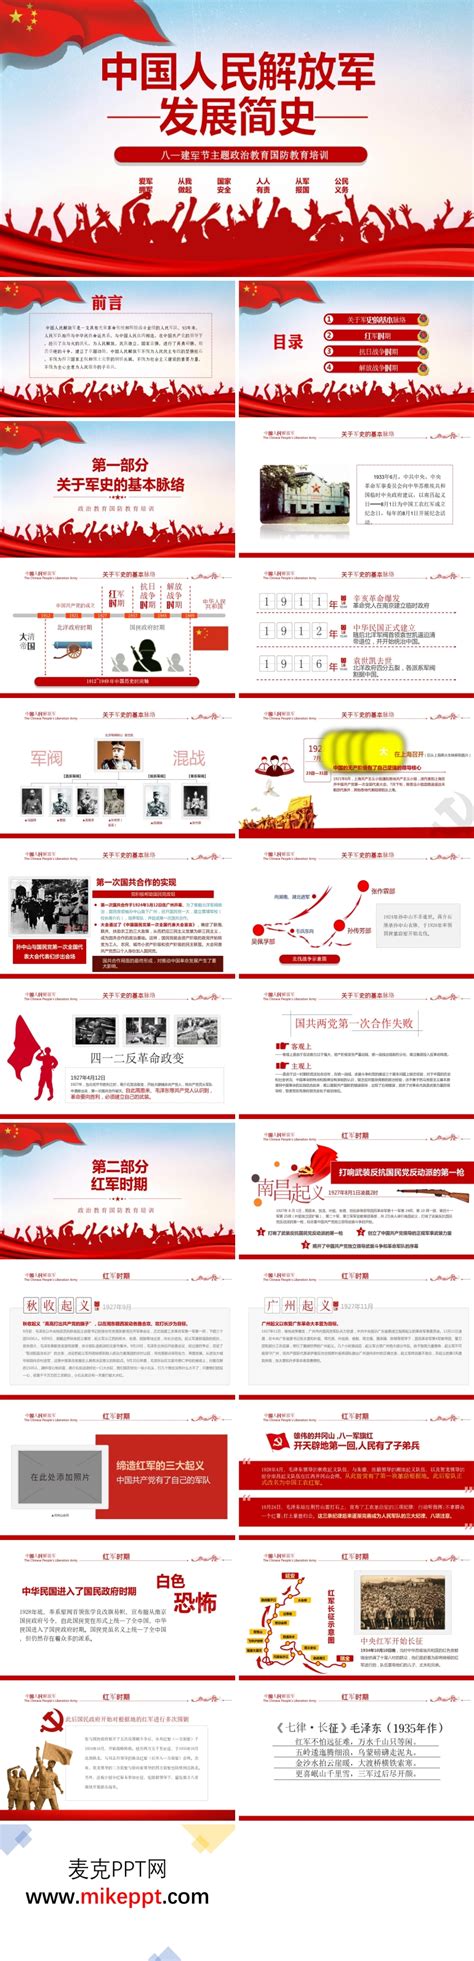 中国人民解放军发展历程图PPT-麦克PPT网